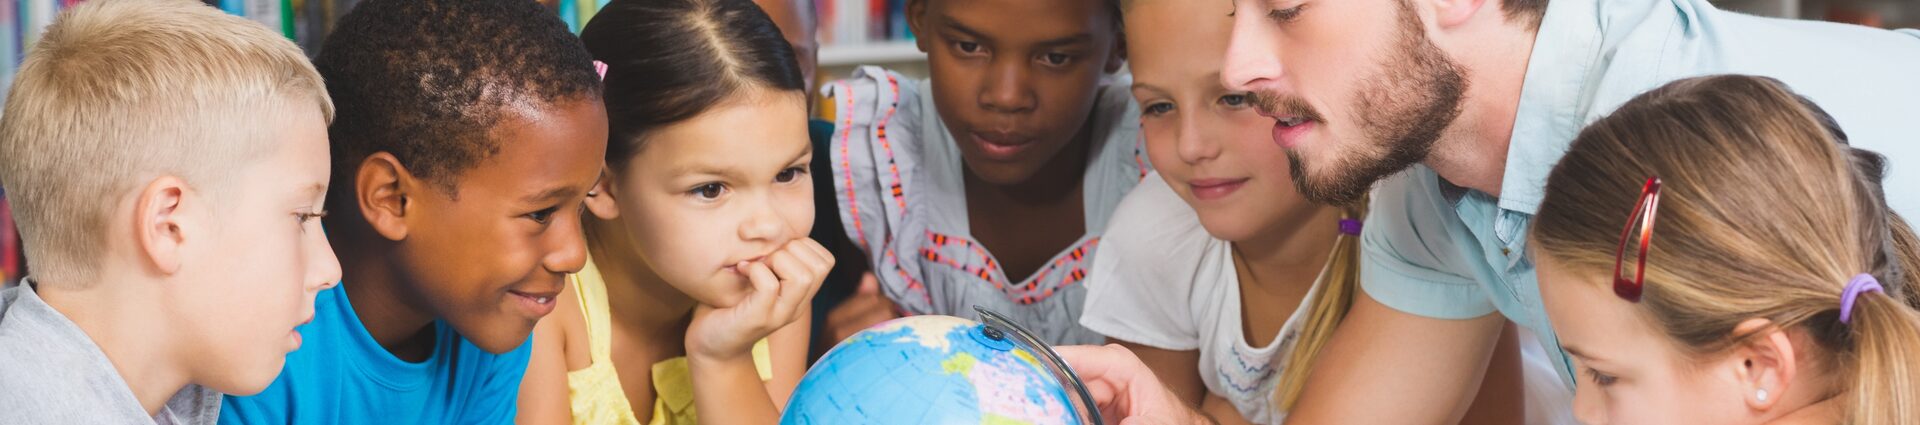 Eine Gruppe von Schülerinnen und Schülern unterschiedlicher Herkunft beugt sich über einen Globus